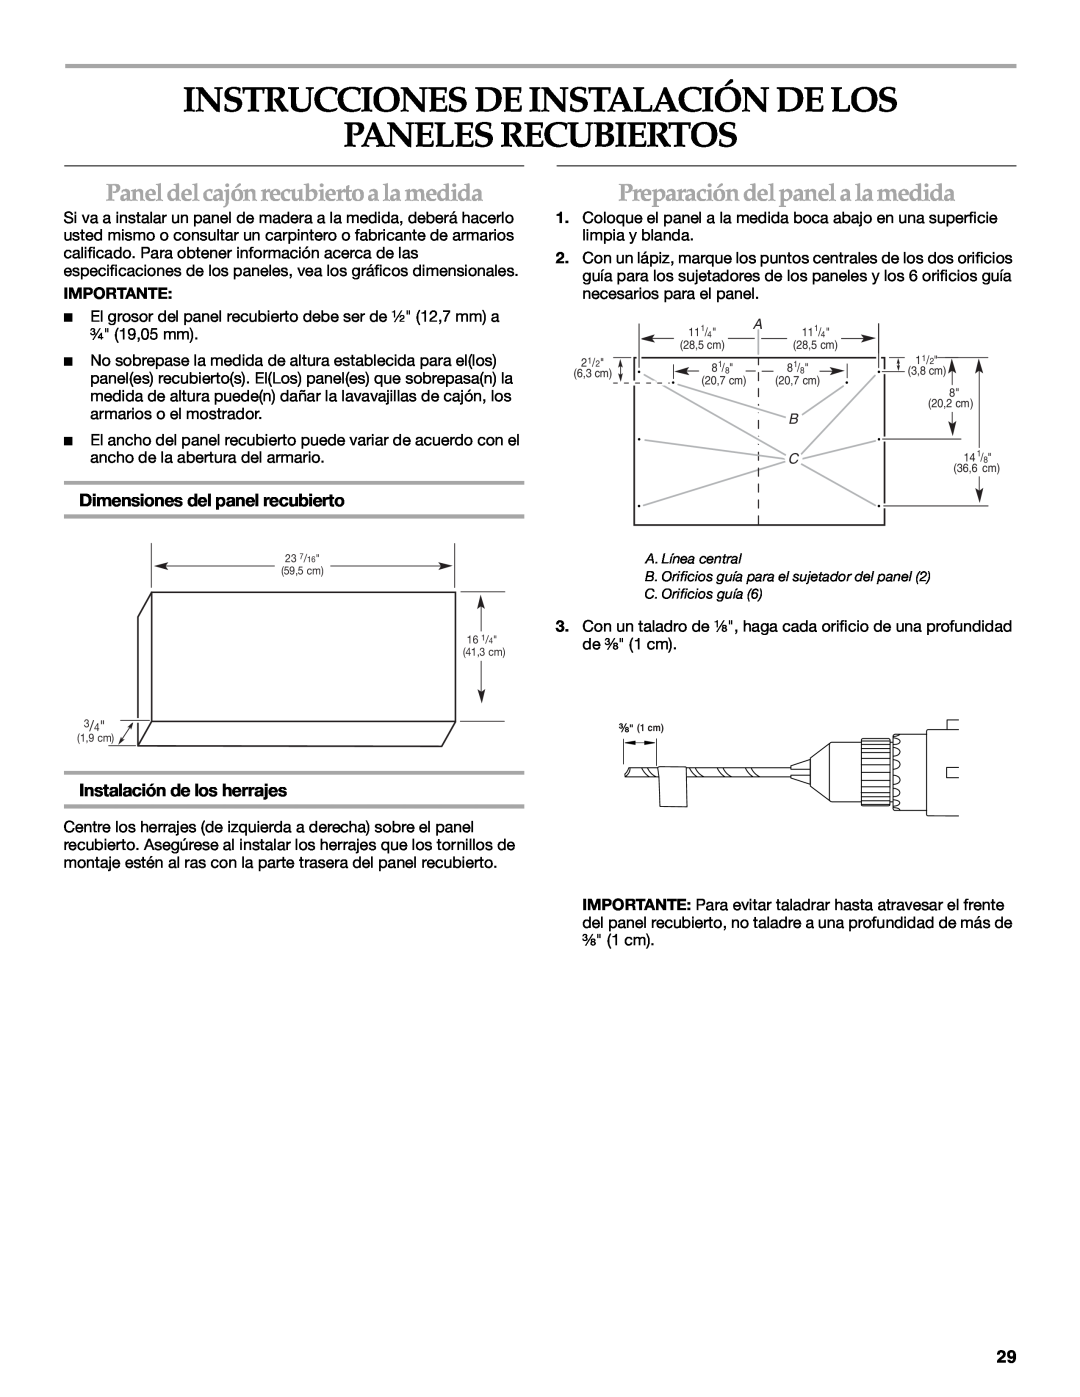 KitchenAid KUDD03STBL Instrucciones De Instalación De Los Paneles Recubiertos, Panel del cajón recubierto a la medida 